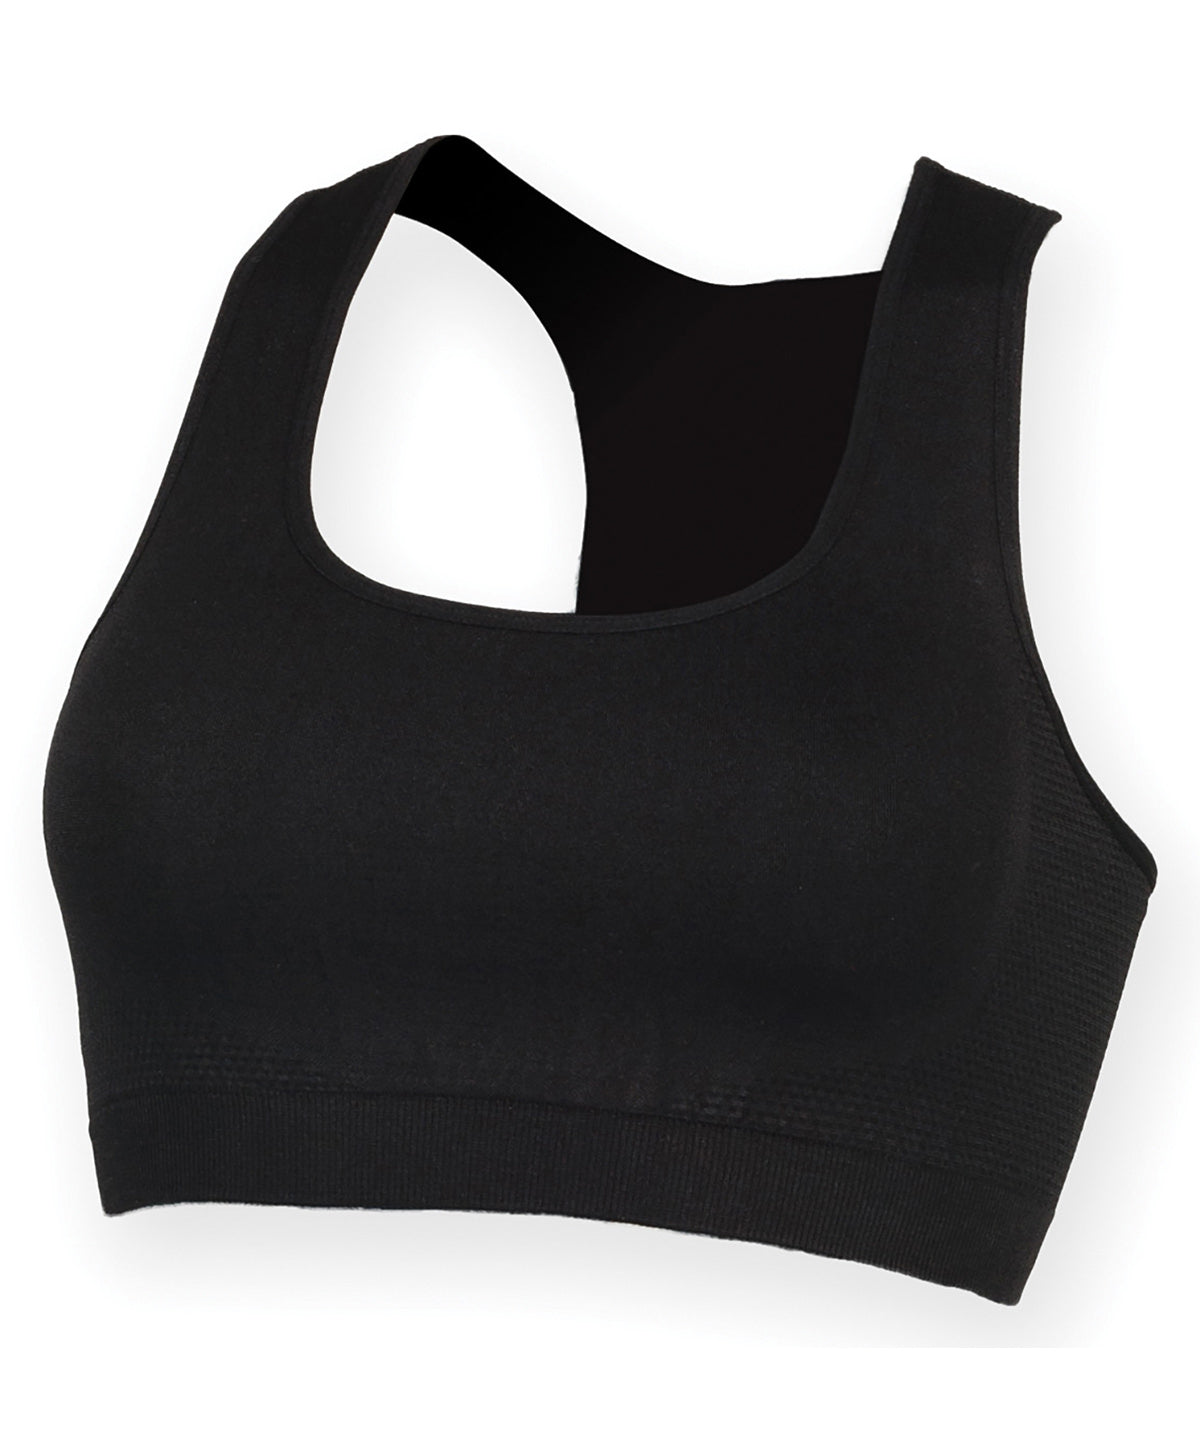 Vesti - Women's Workout Cropped Top